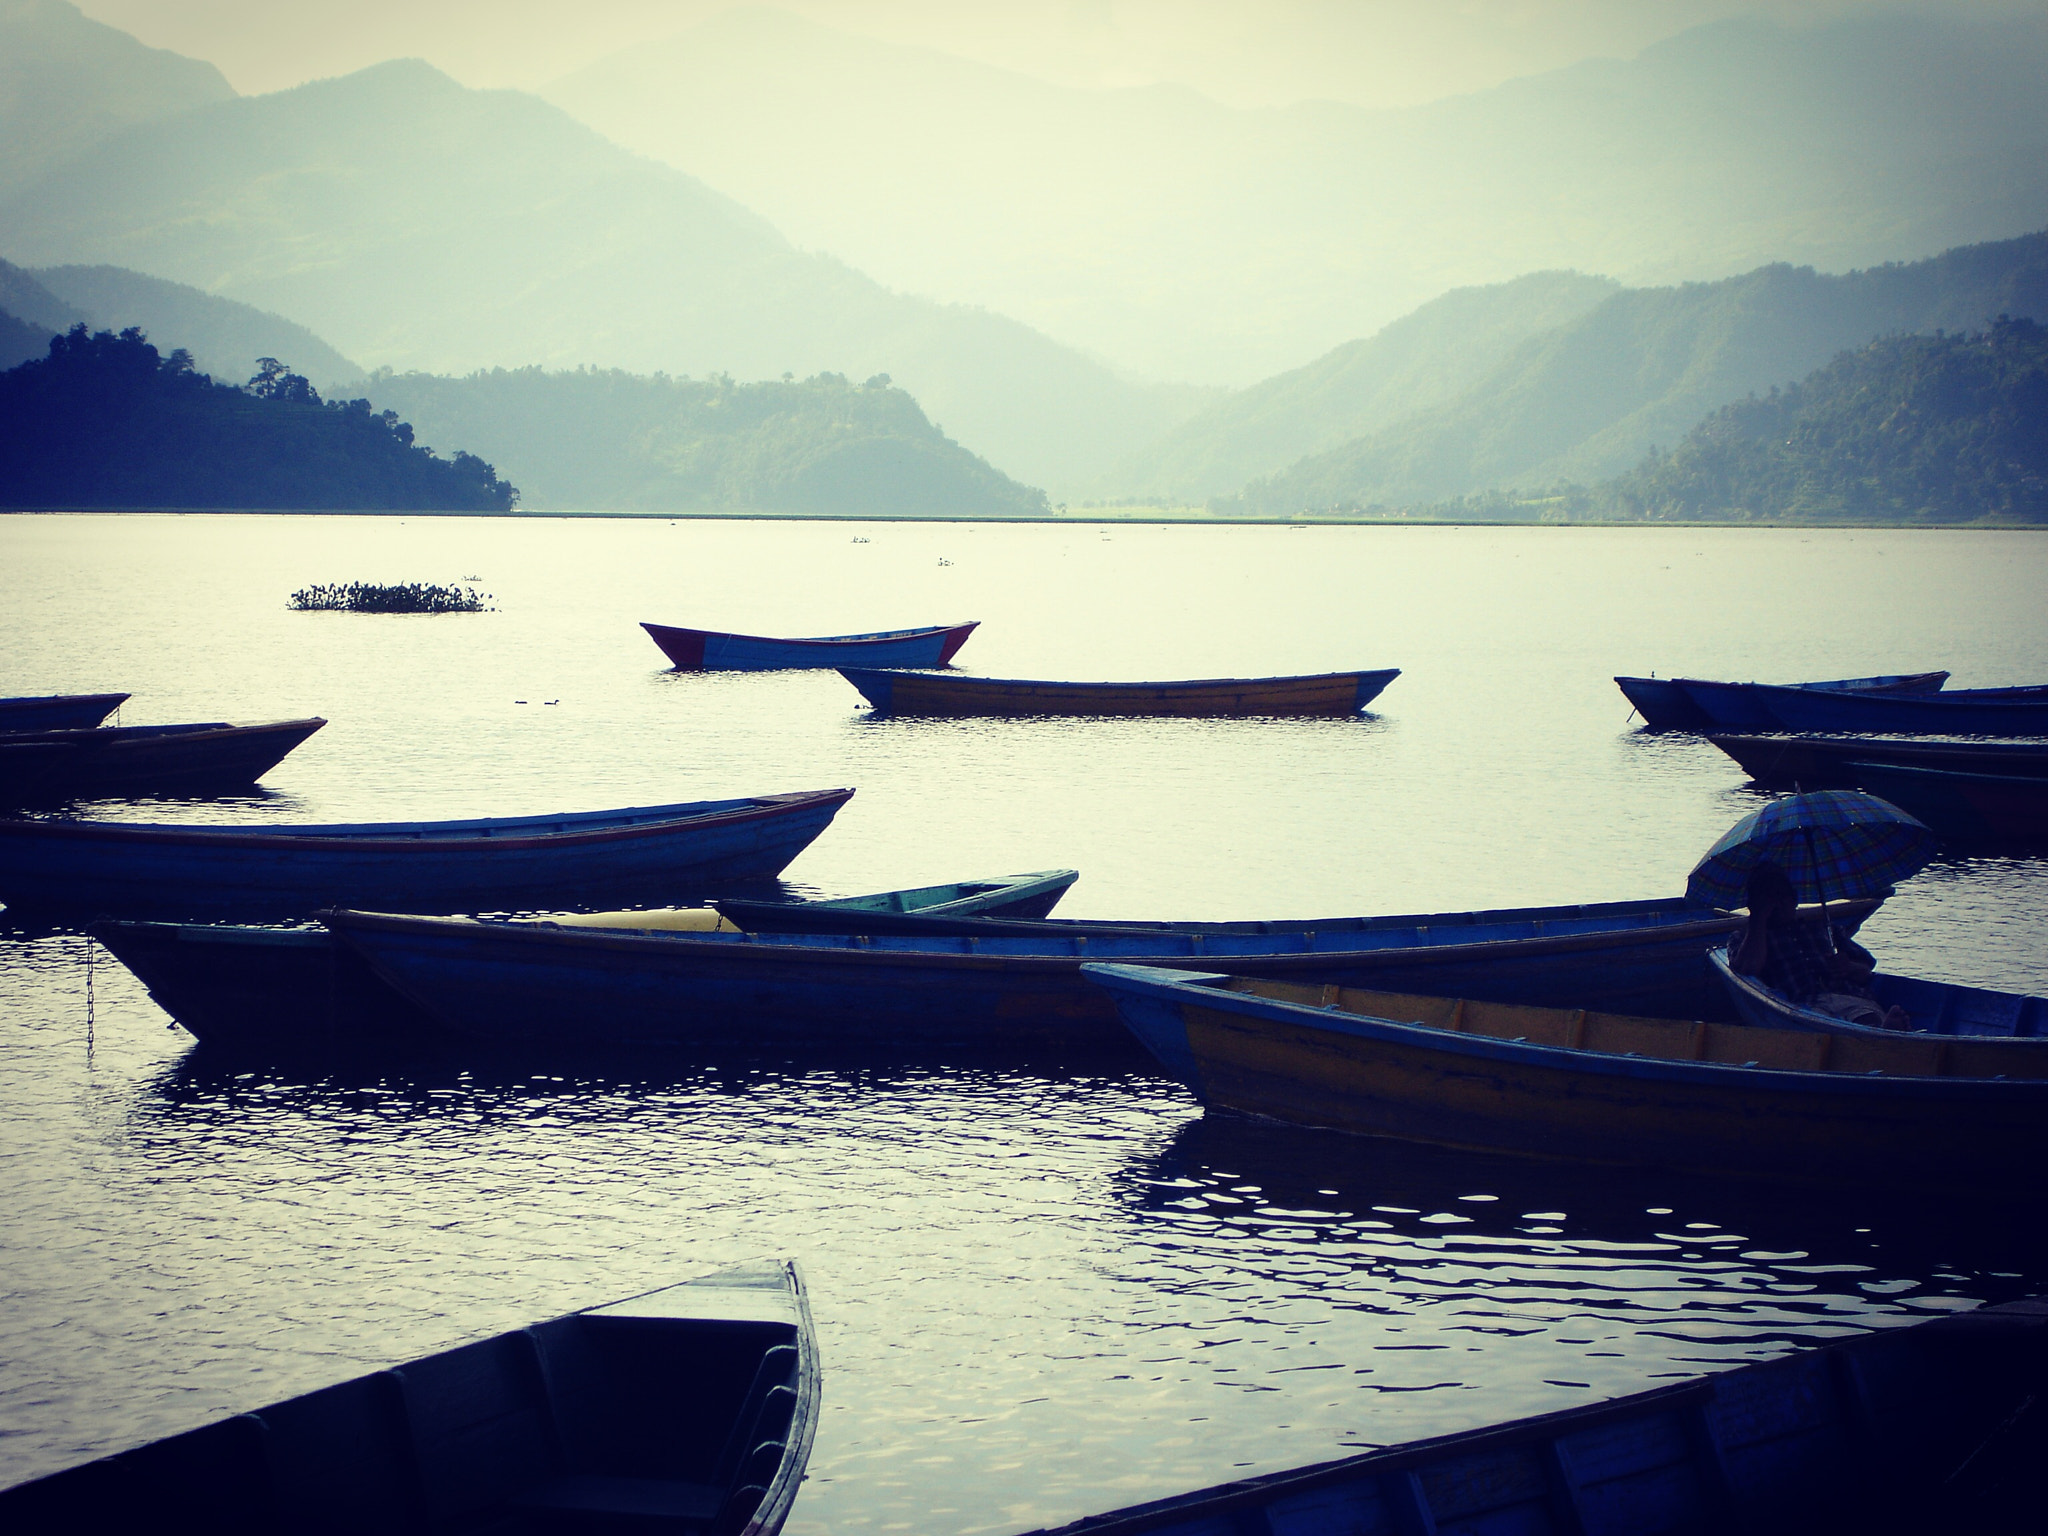 Sony DSC-P150 sample photo. Lake phewa, pokhara, nepal photography